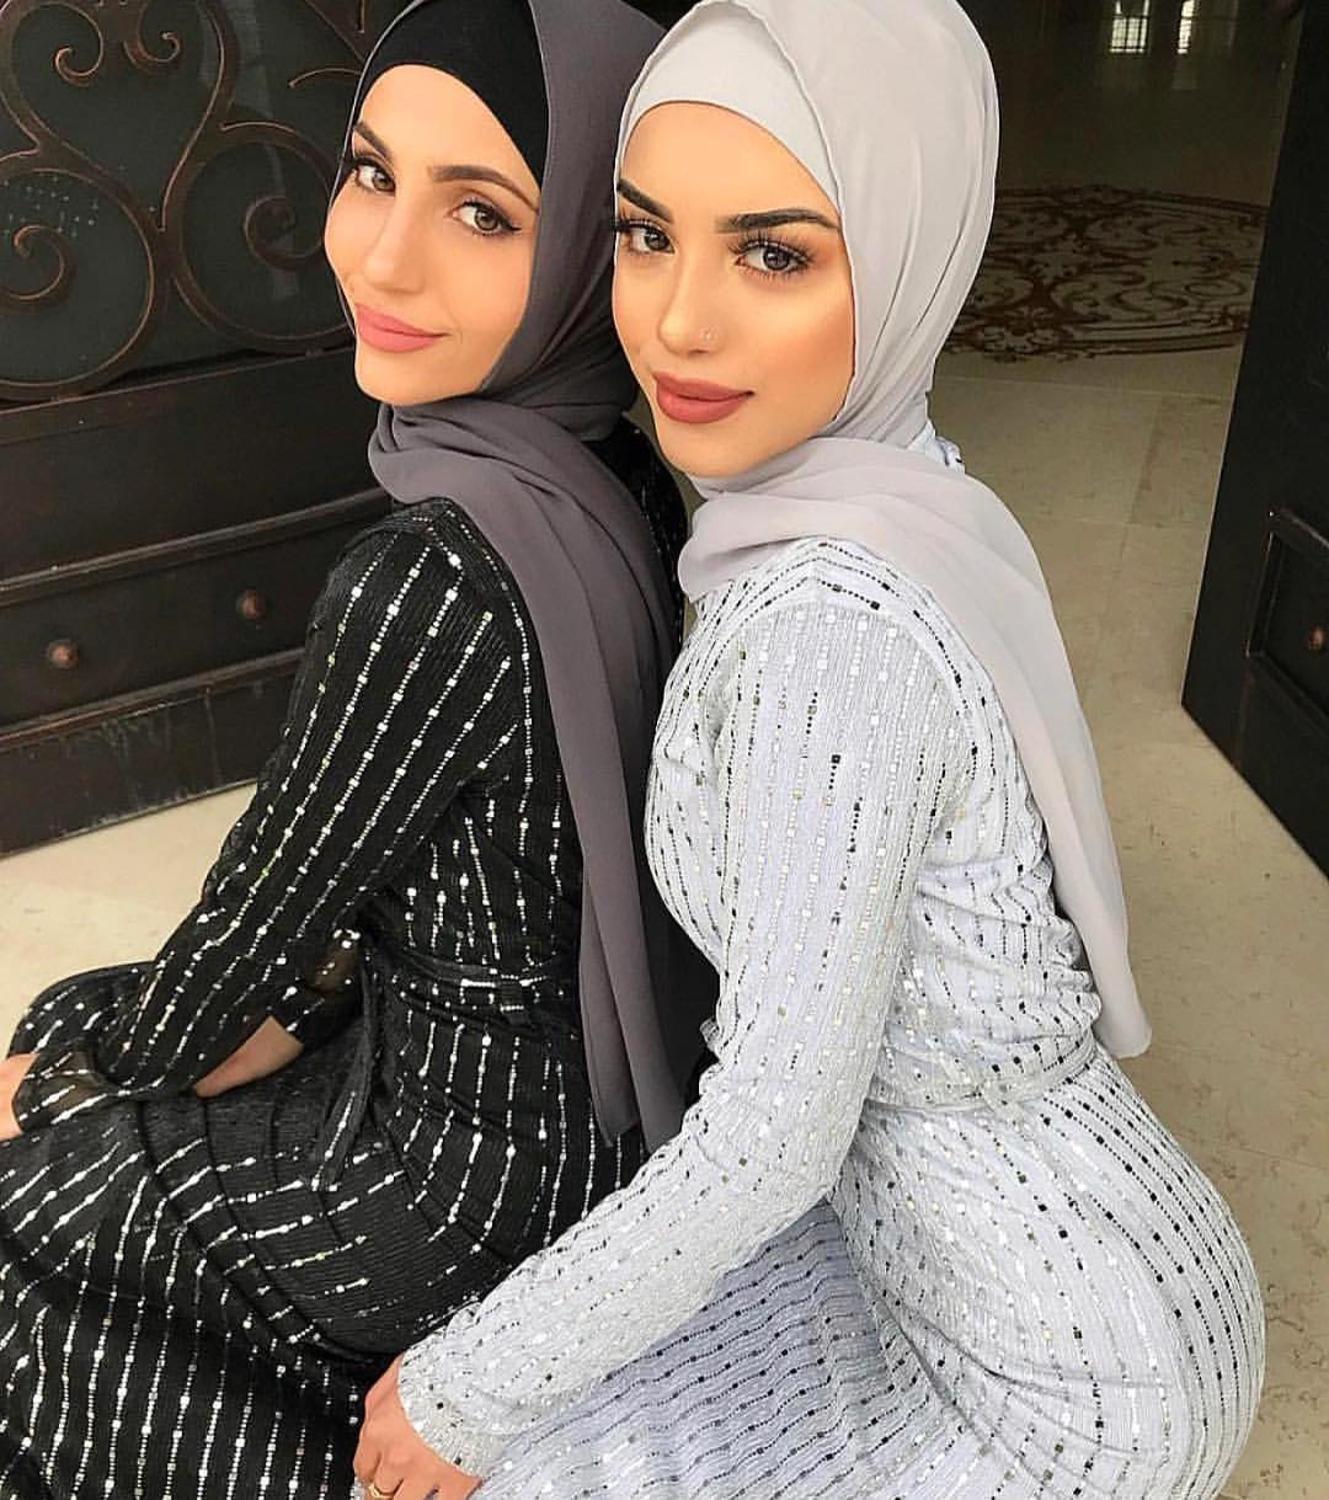 Изображение товара: Элегантное мусульманское платье макси с блестками, кардиган «абайя», женское кимоно, длинное платье, Юба, Ближний Восток, Рамадан, ИД, Арабский исламский